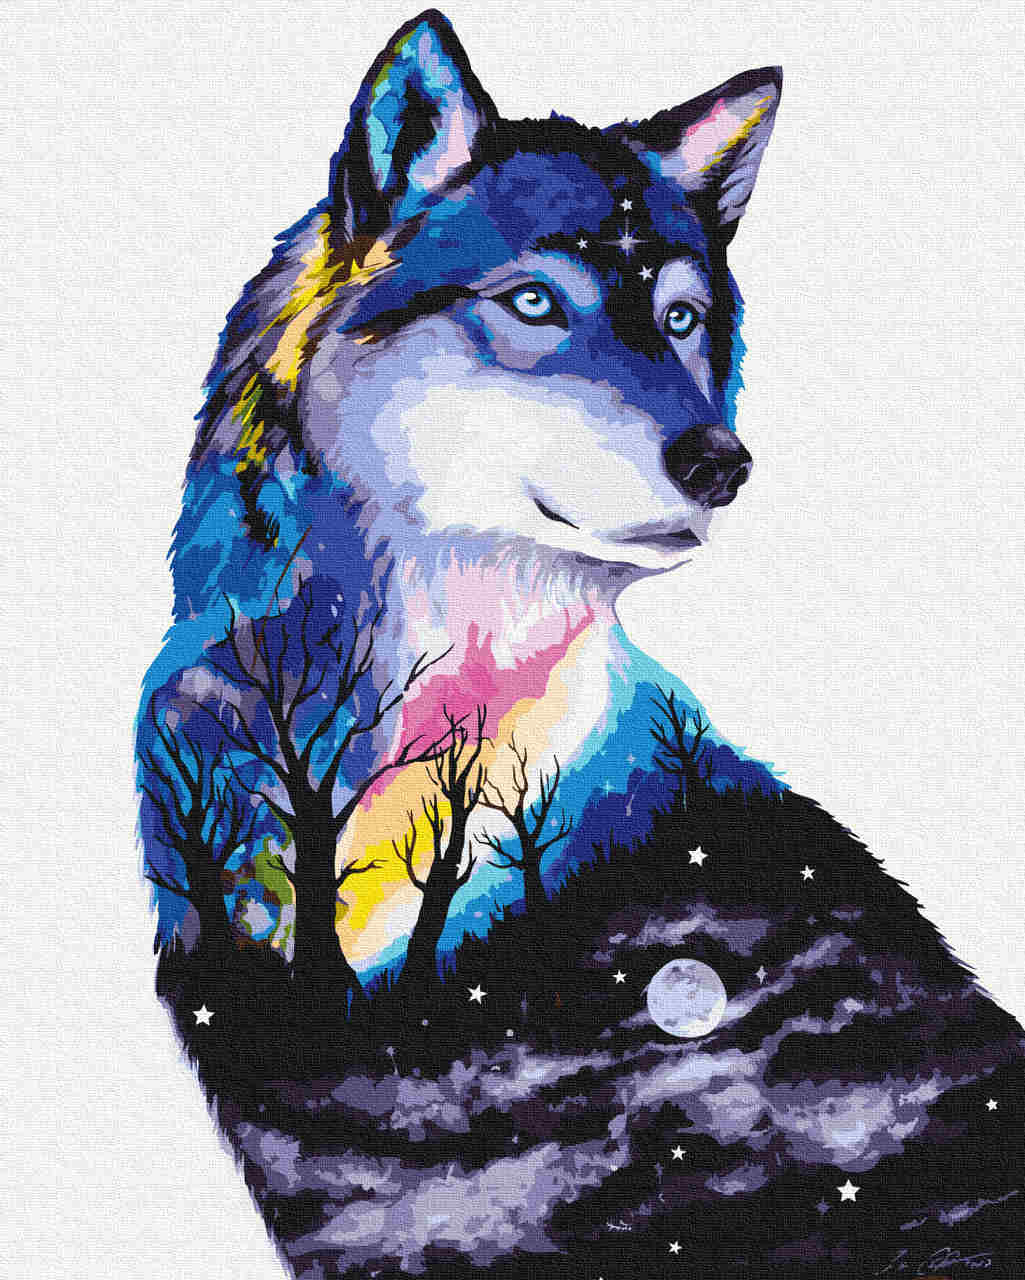 Malen nach Zahlen - wolf night - by Pixie Cold, mit Rahmen von Pixie Cold